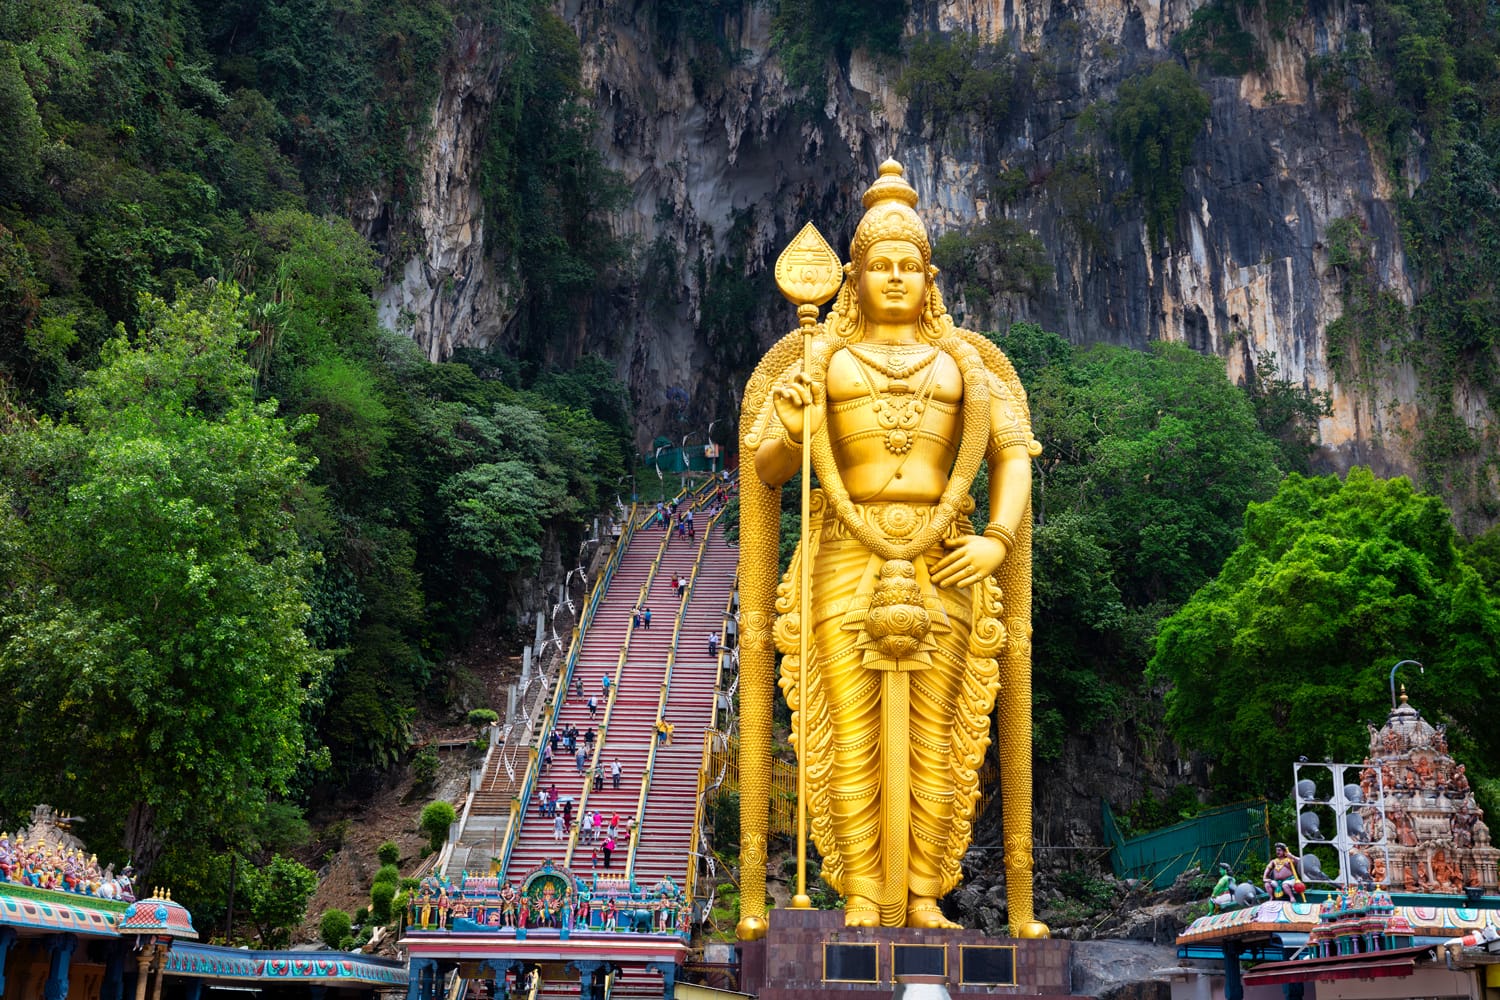 Άγαλμα και είσοδος σπηλαίων Batu κοντά στην Κουάλα Λουμπούρ, Μαλαισία